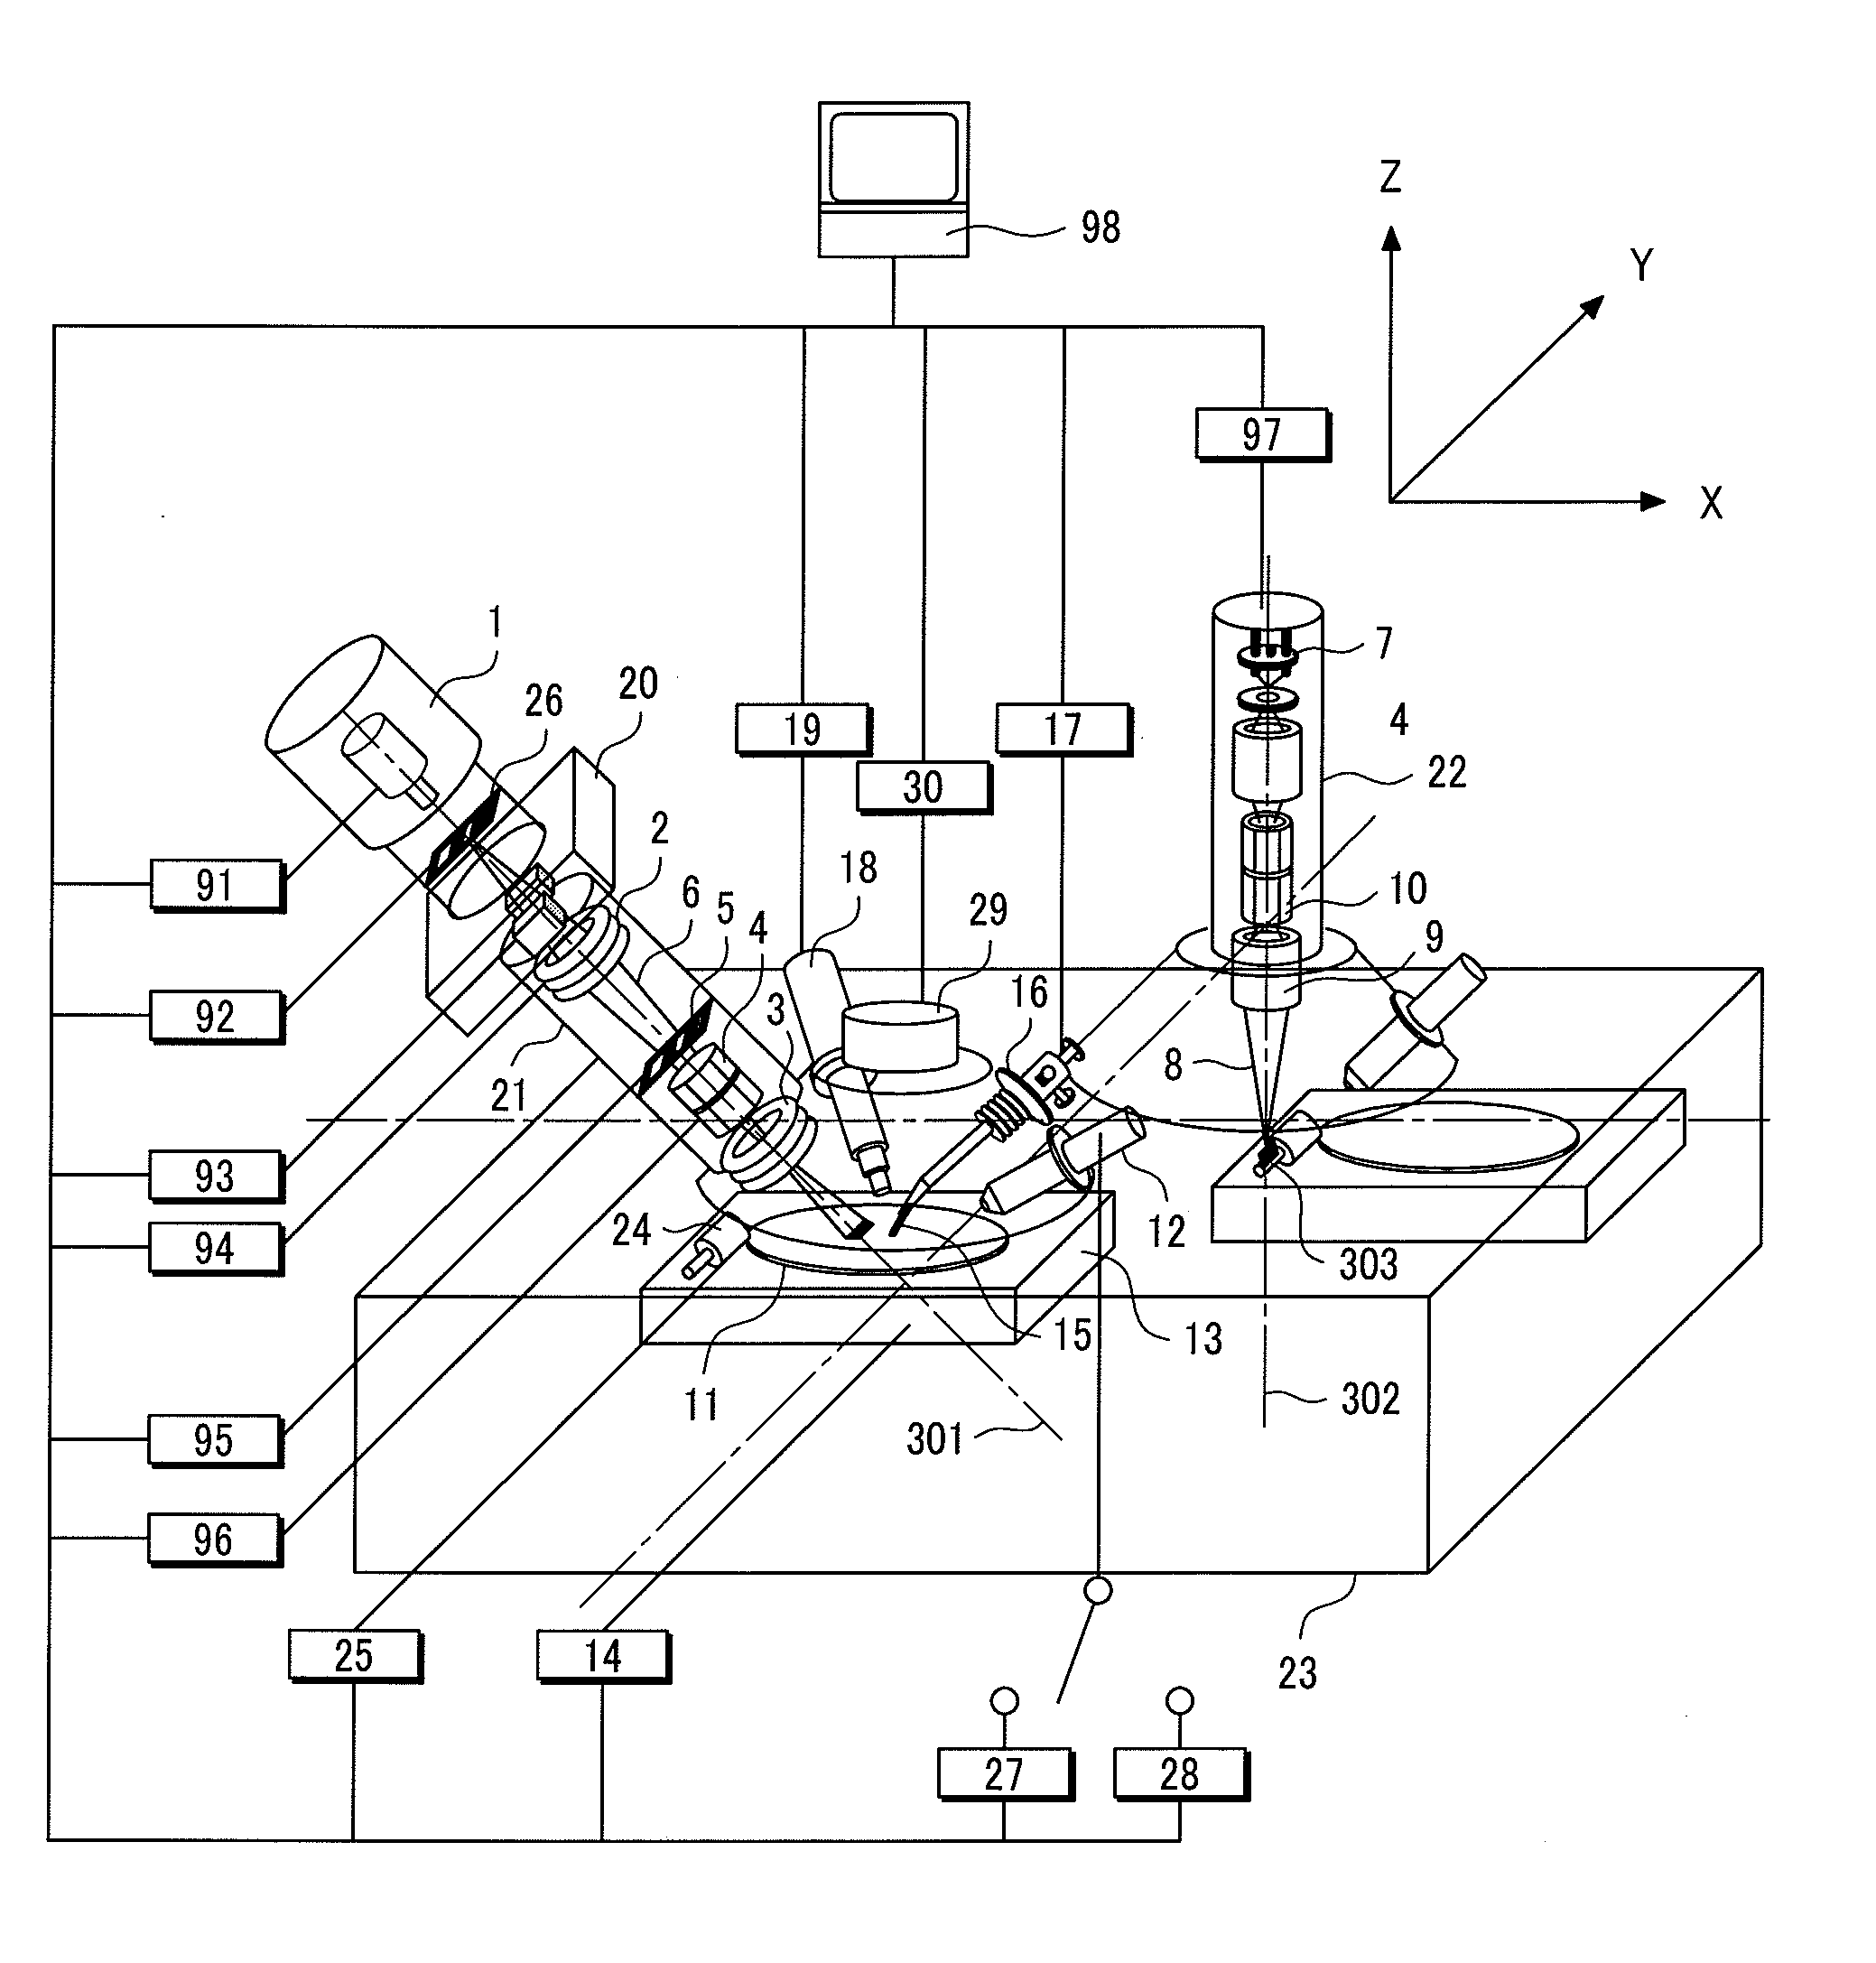 Ion beam processing apparatus